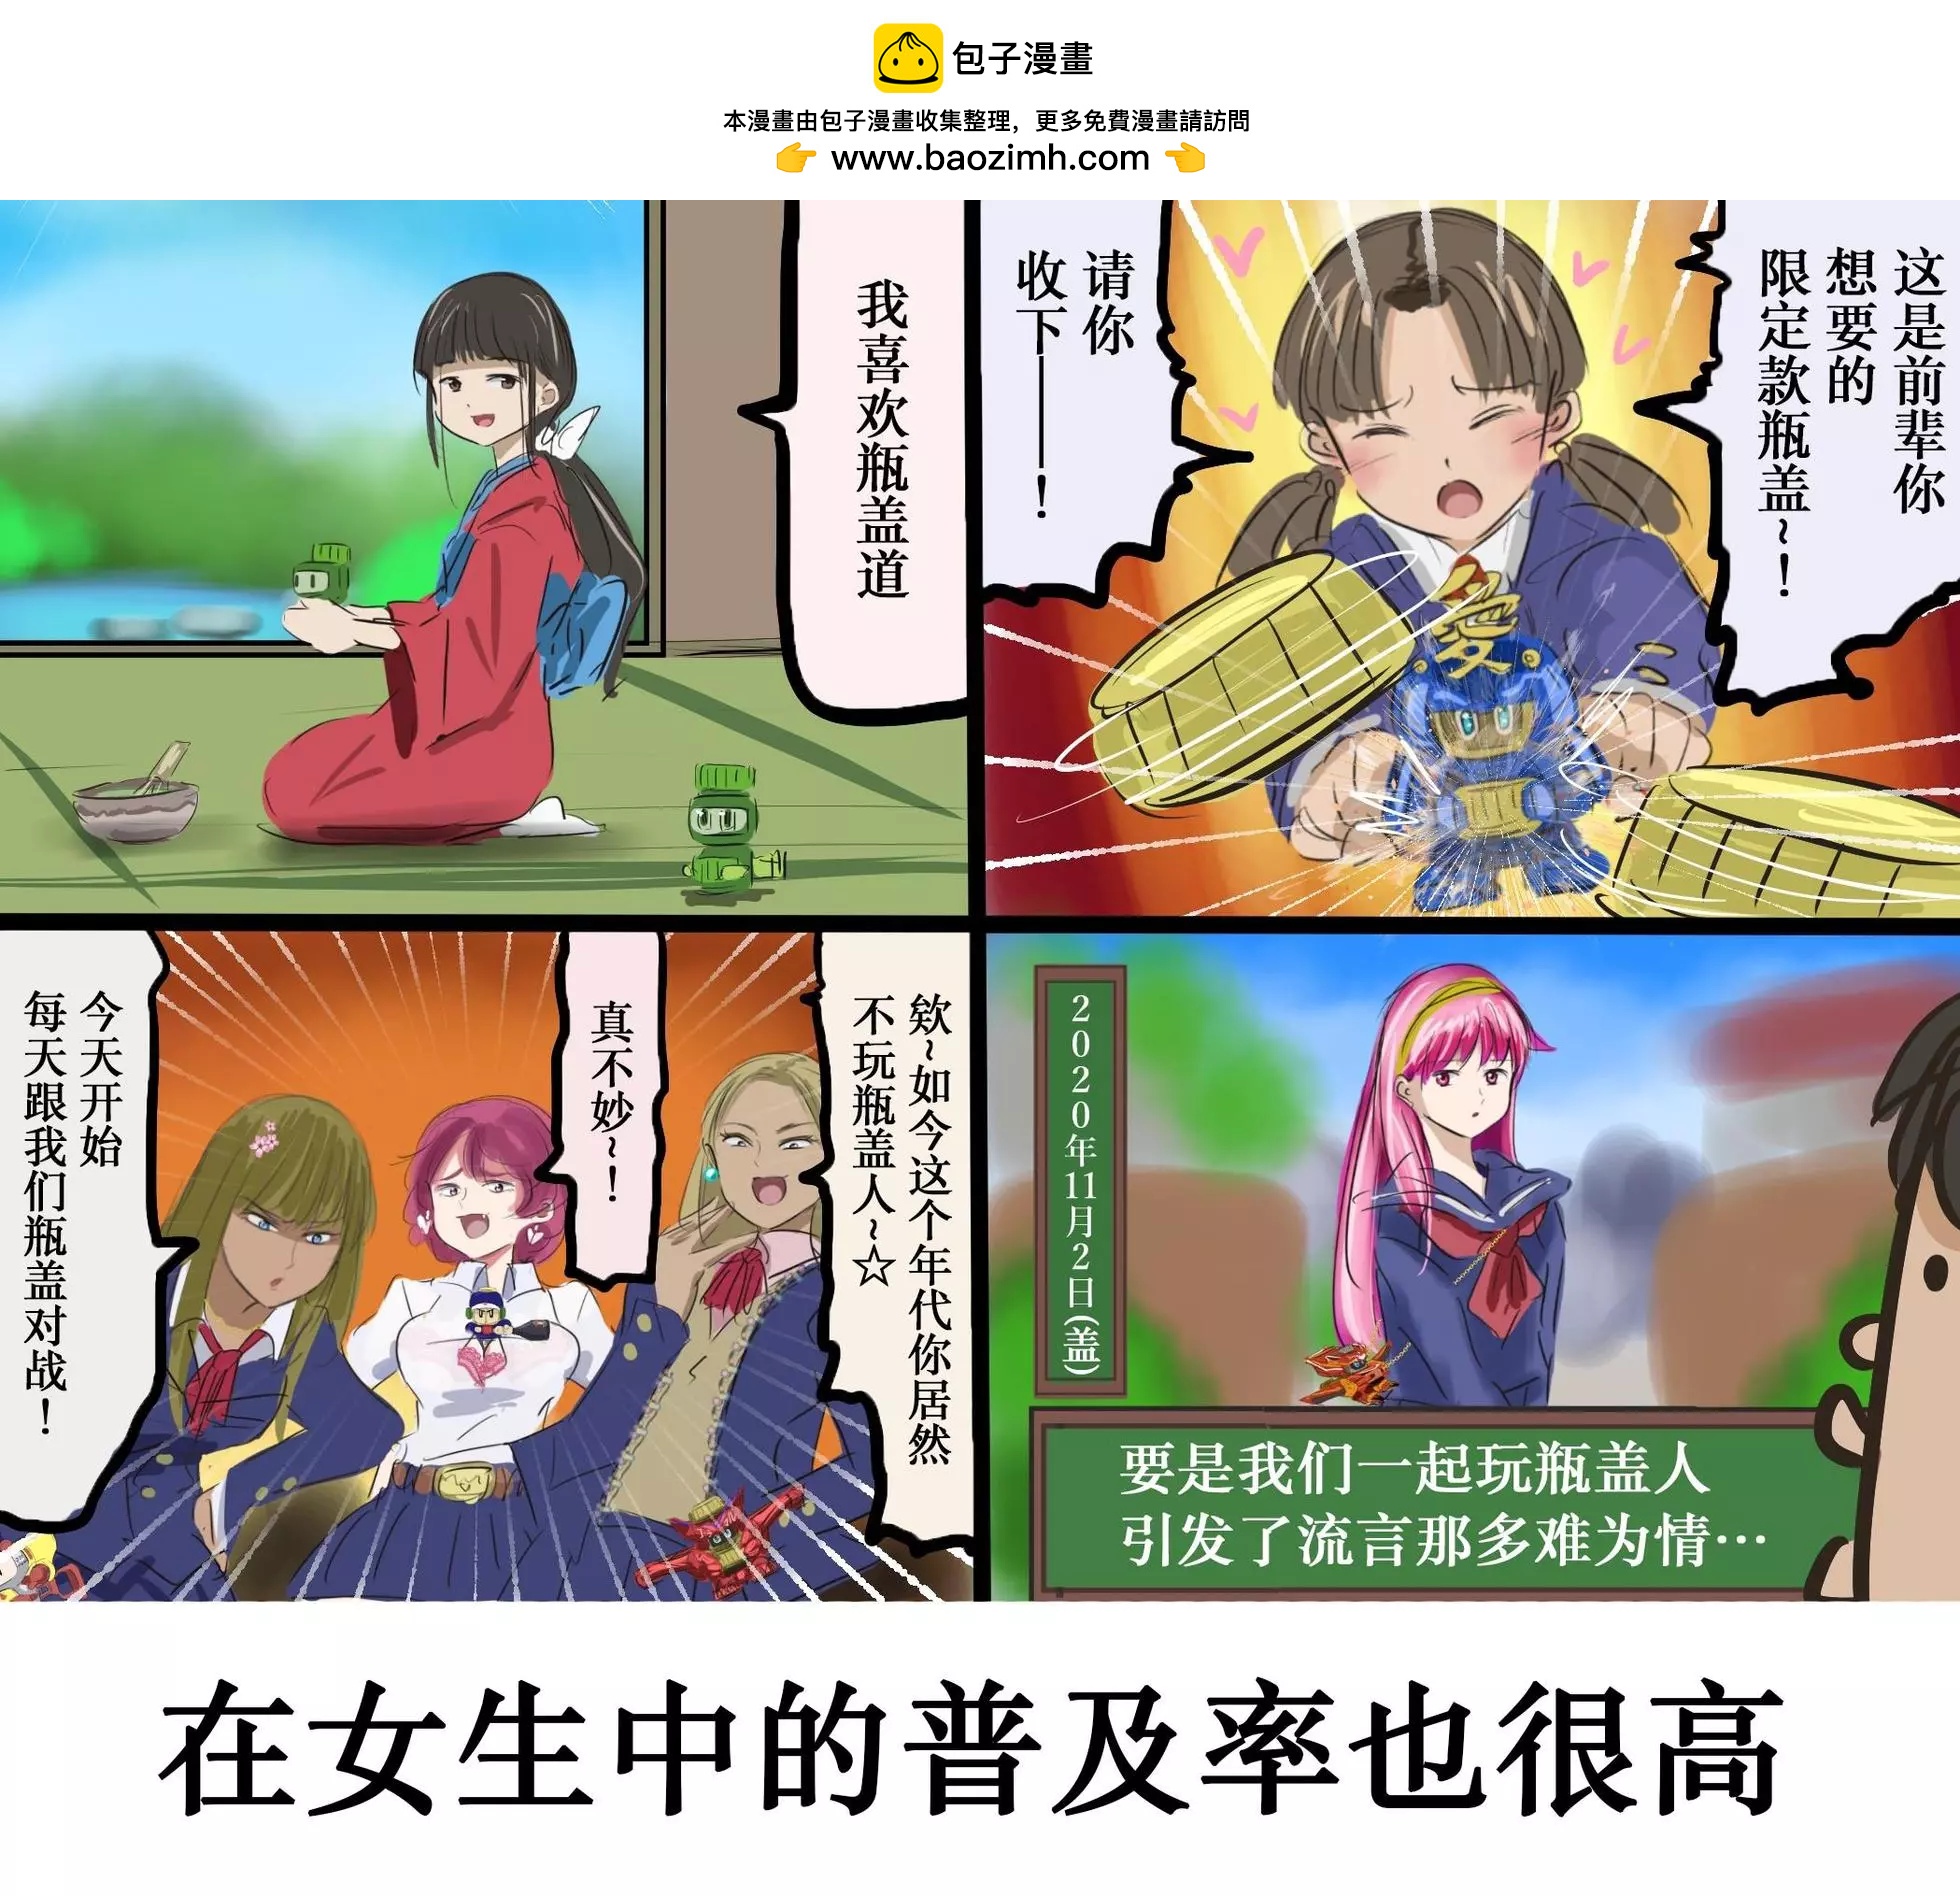 カコミスル老师四格合集 - 平成广告漫画风瓶盖人（其6） - 1